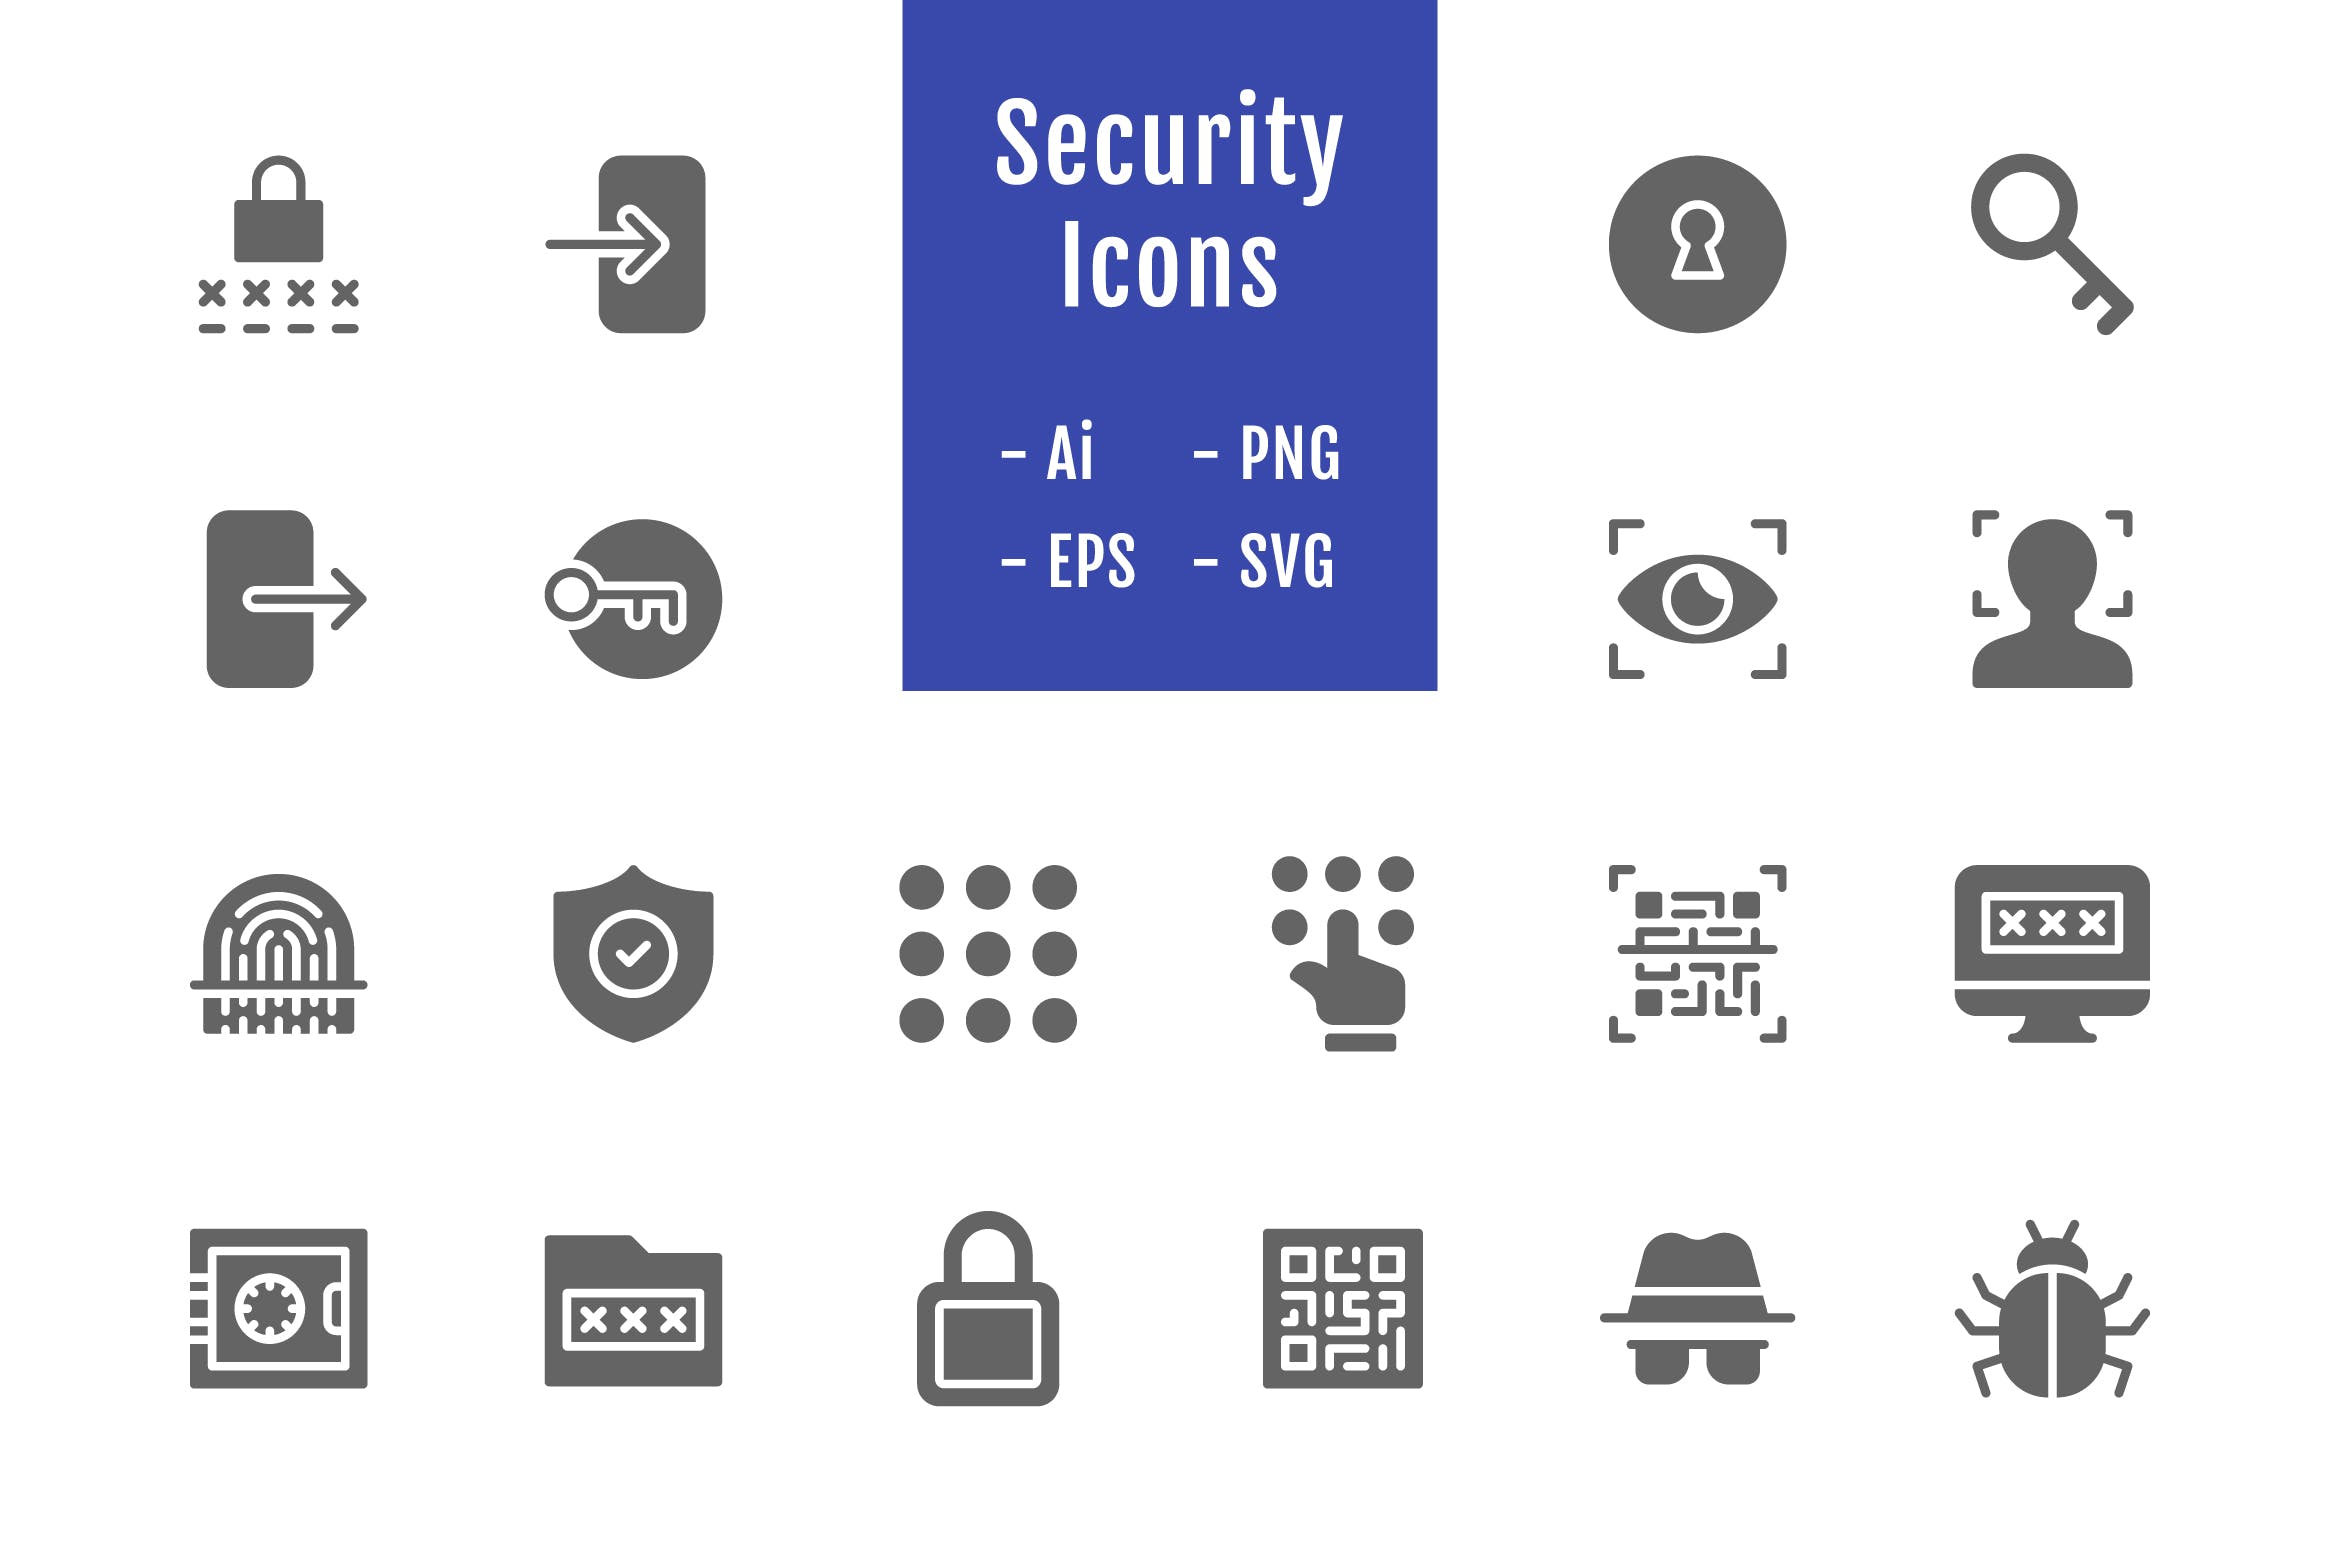 20枚信息安全主题实心矢量图标 20 Security Icons (Solid)插图